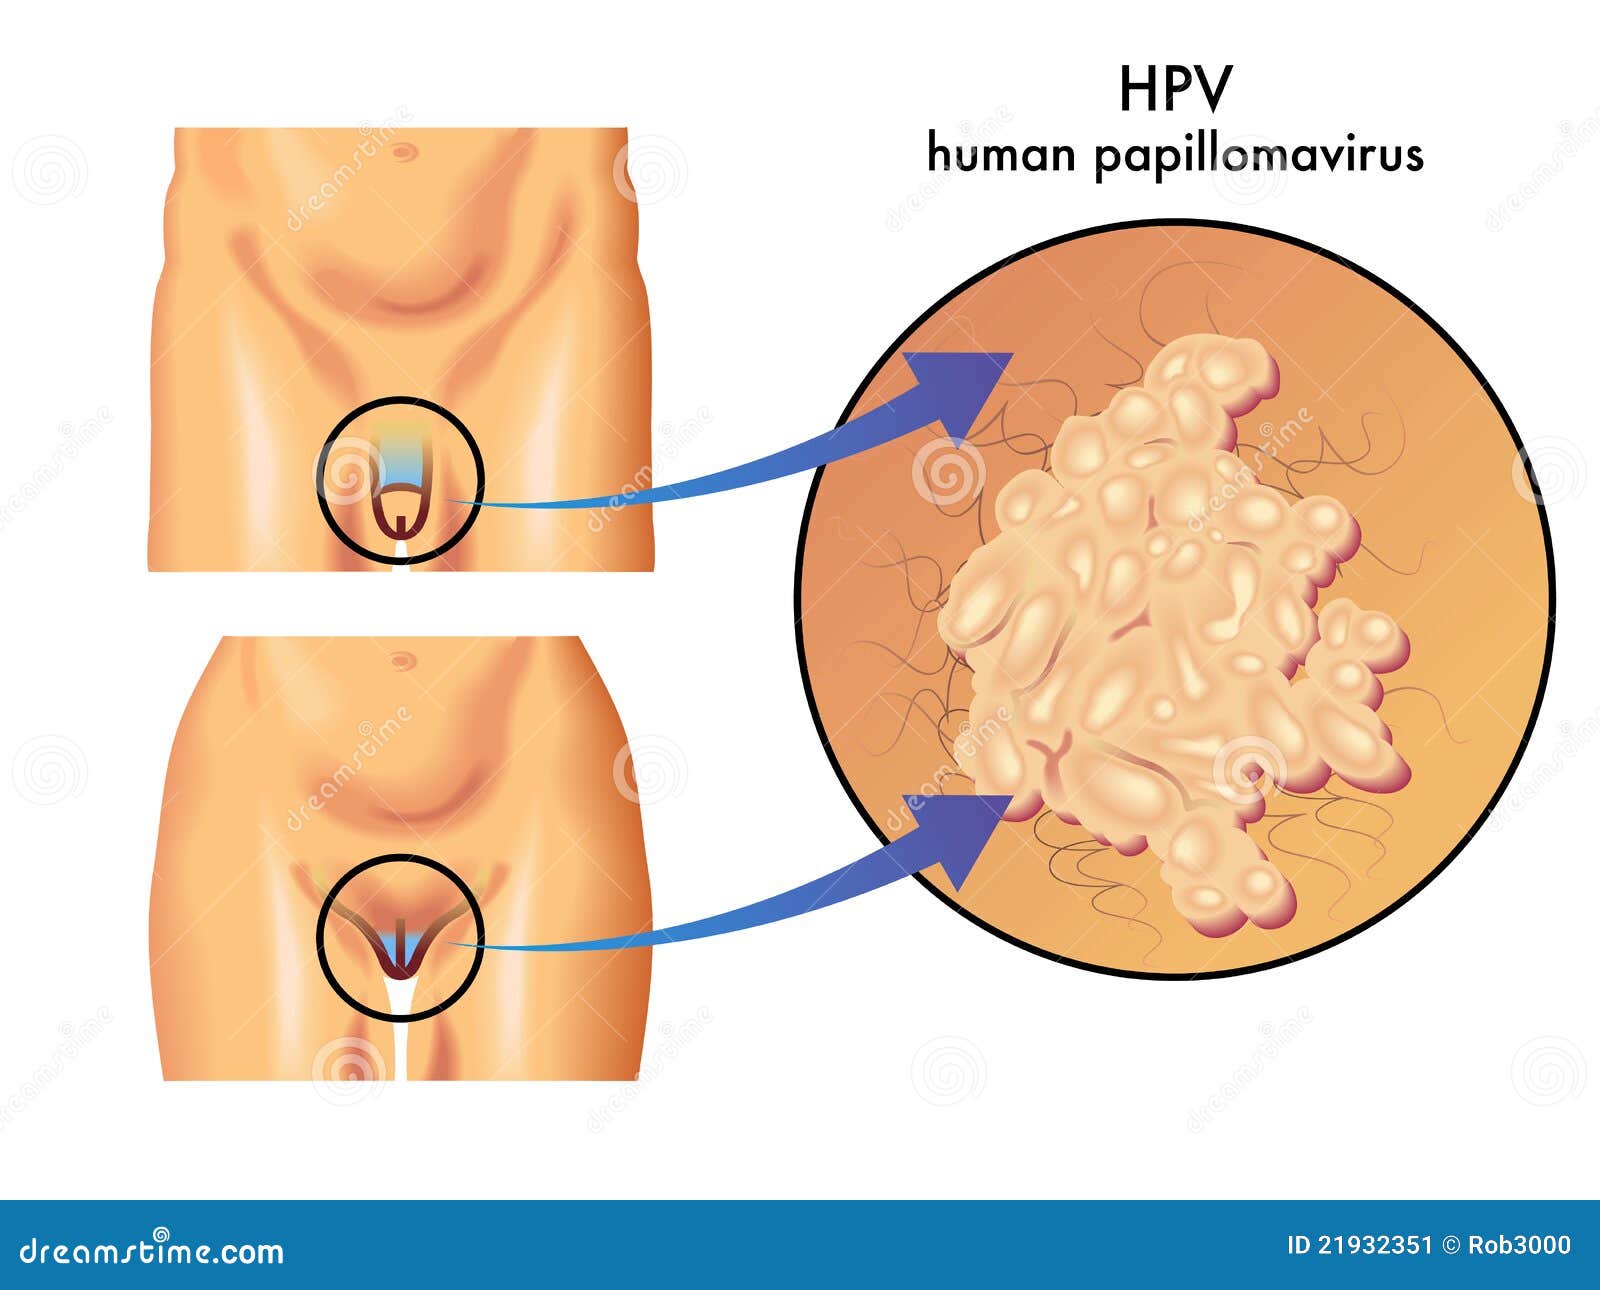 Infecția cu HPV: cauze și transmitere, tipuri de HPV, simptome, tratament și prevenție